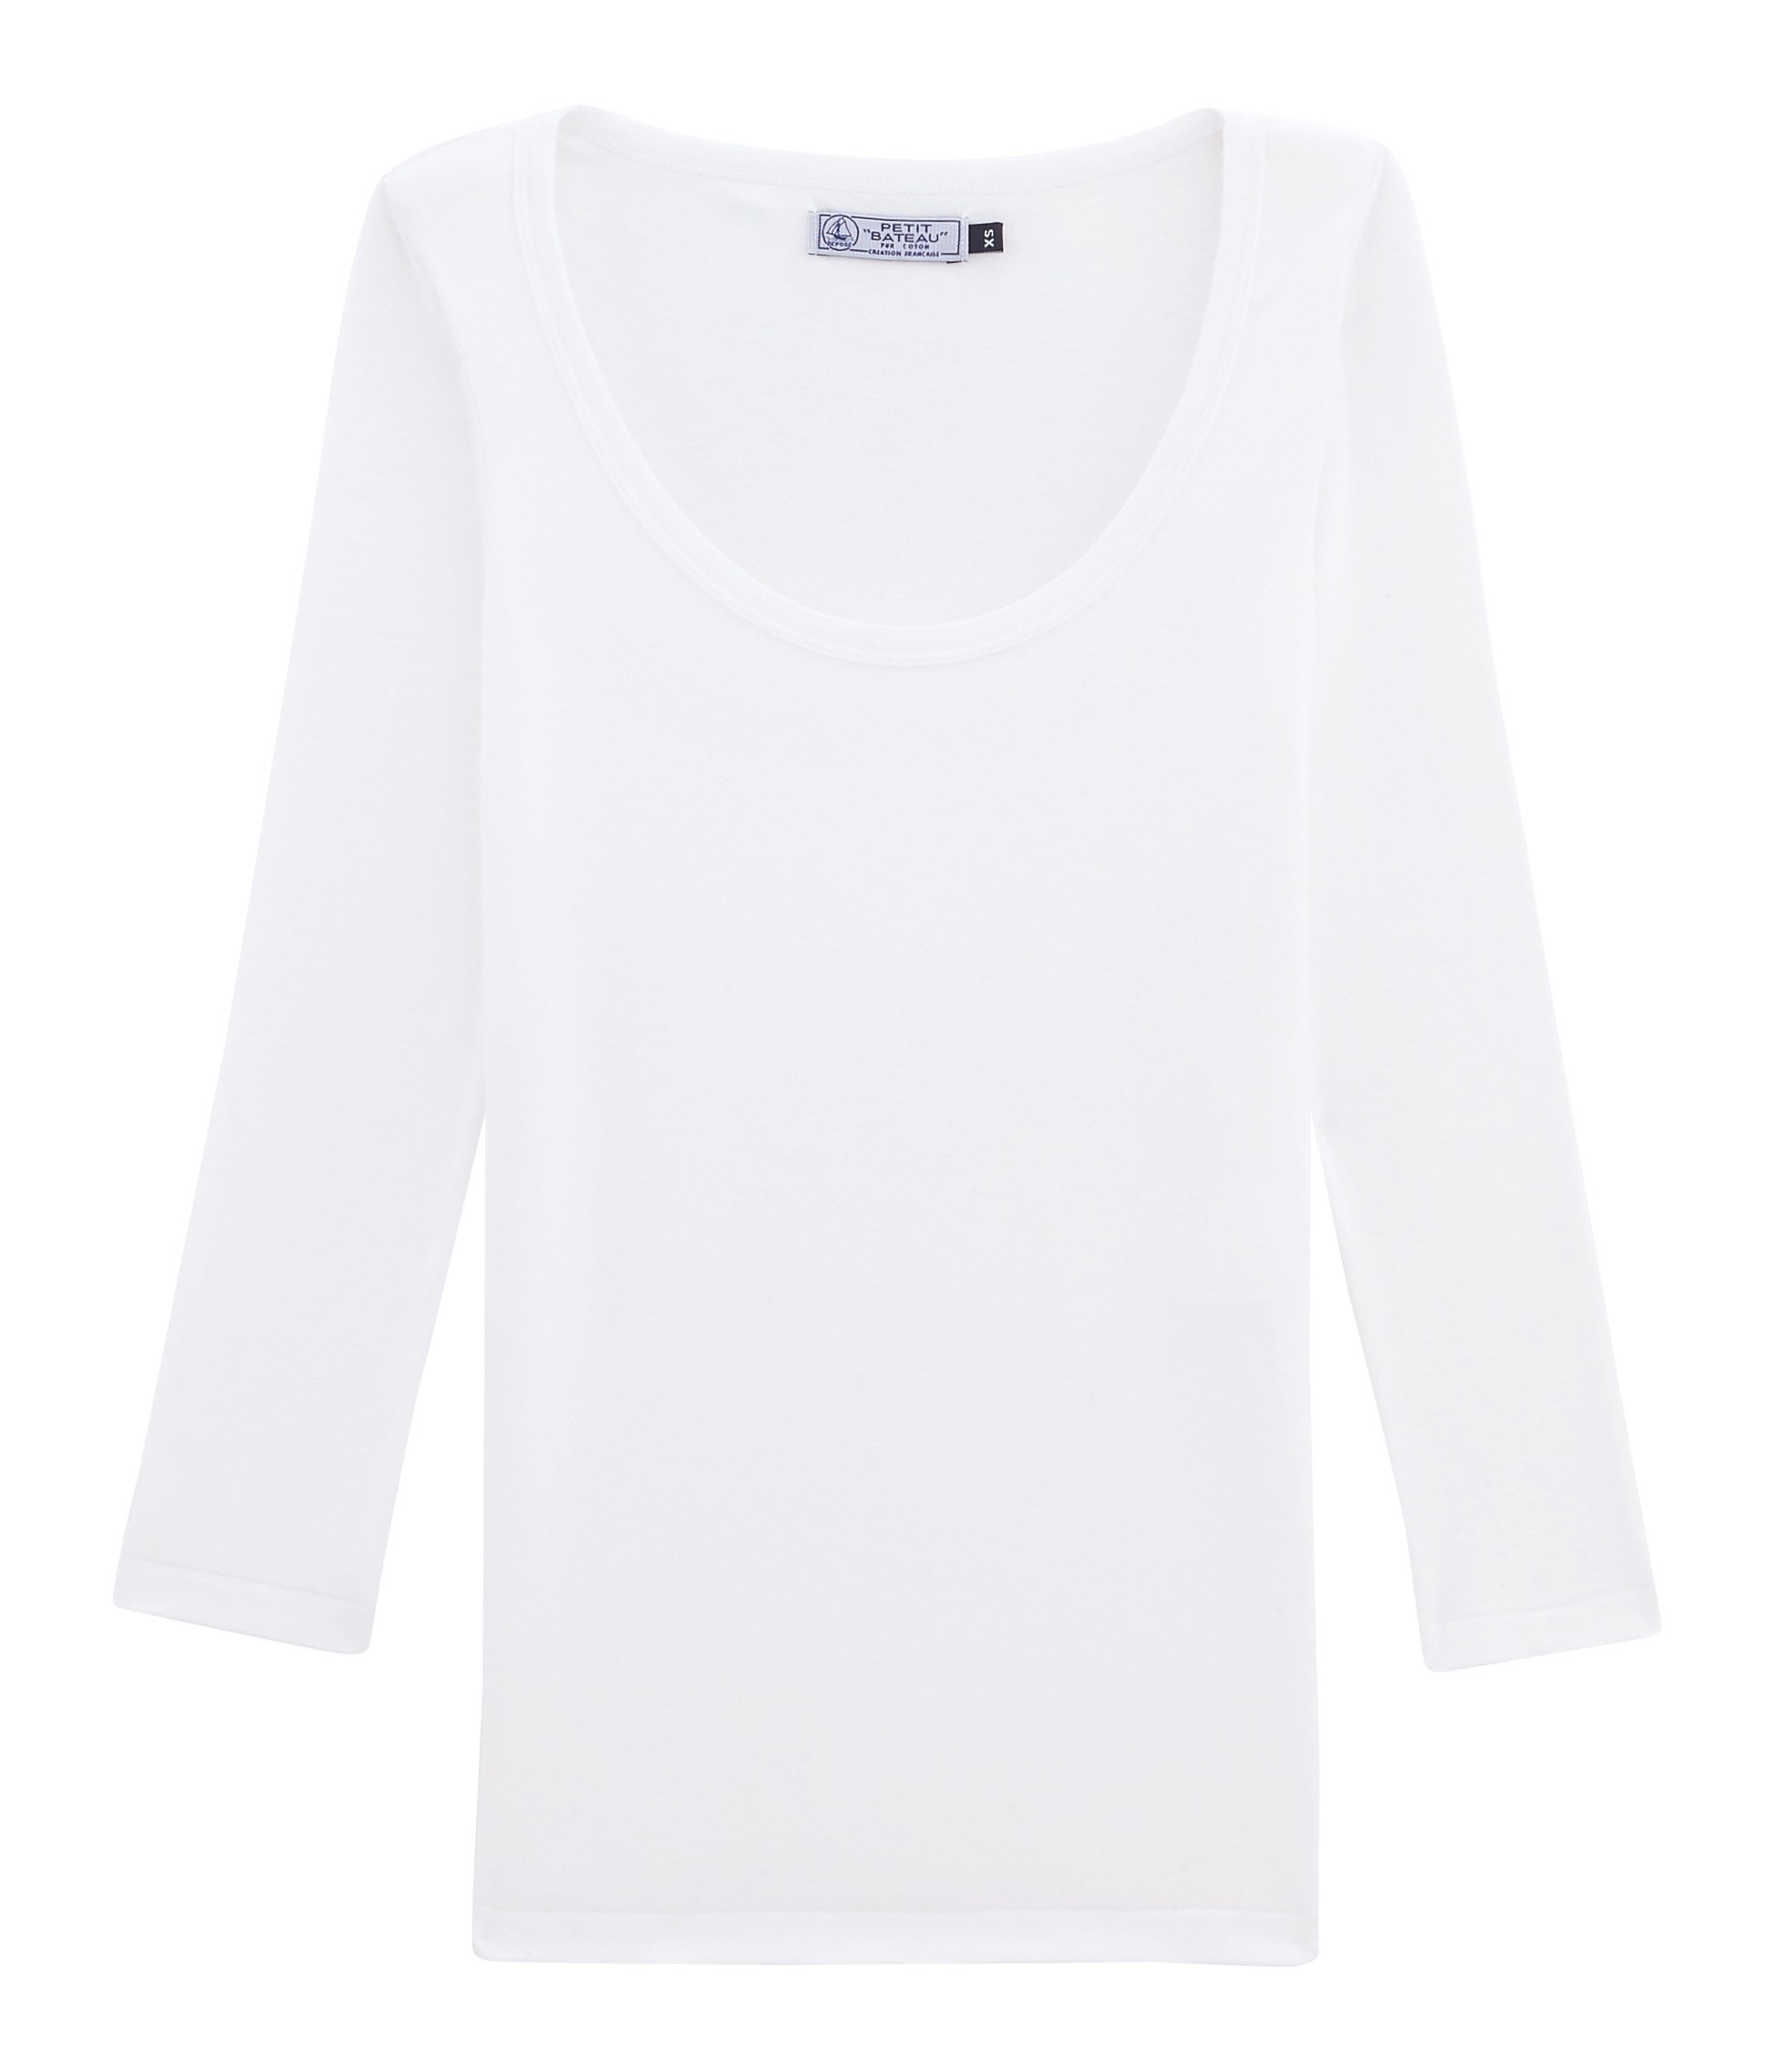 T-shirt blanc Bateau du Maire